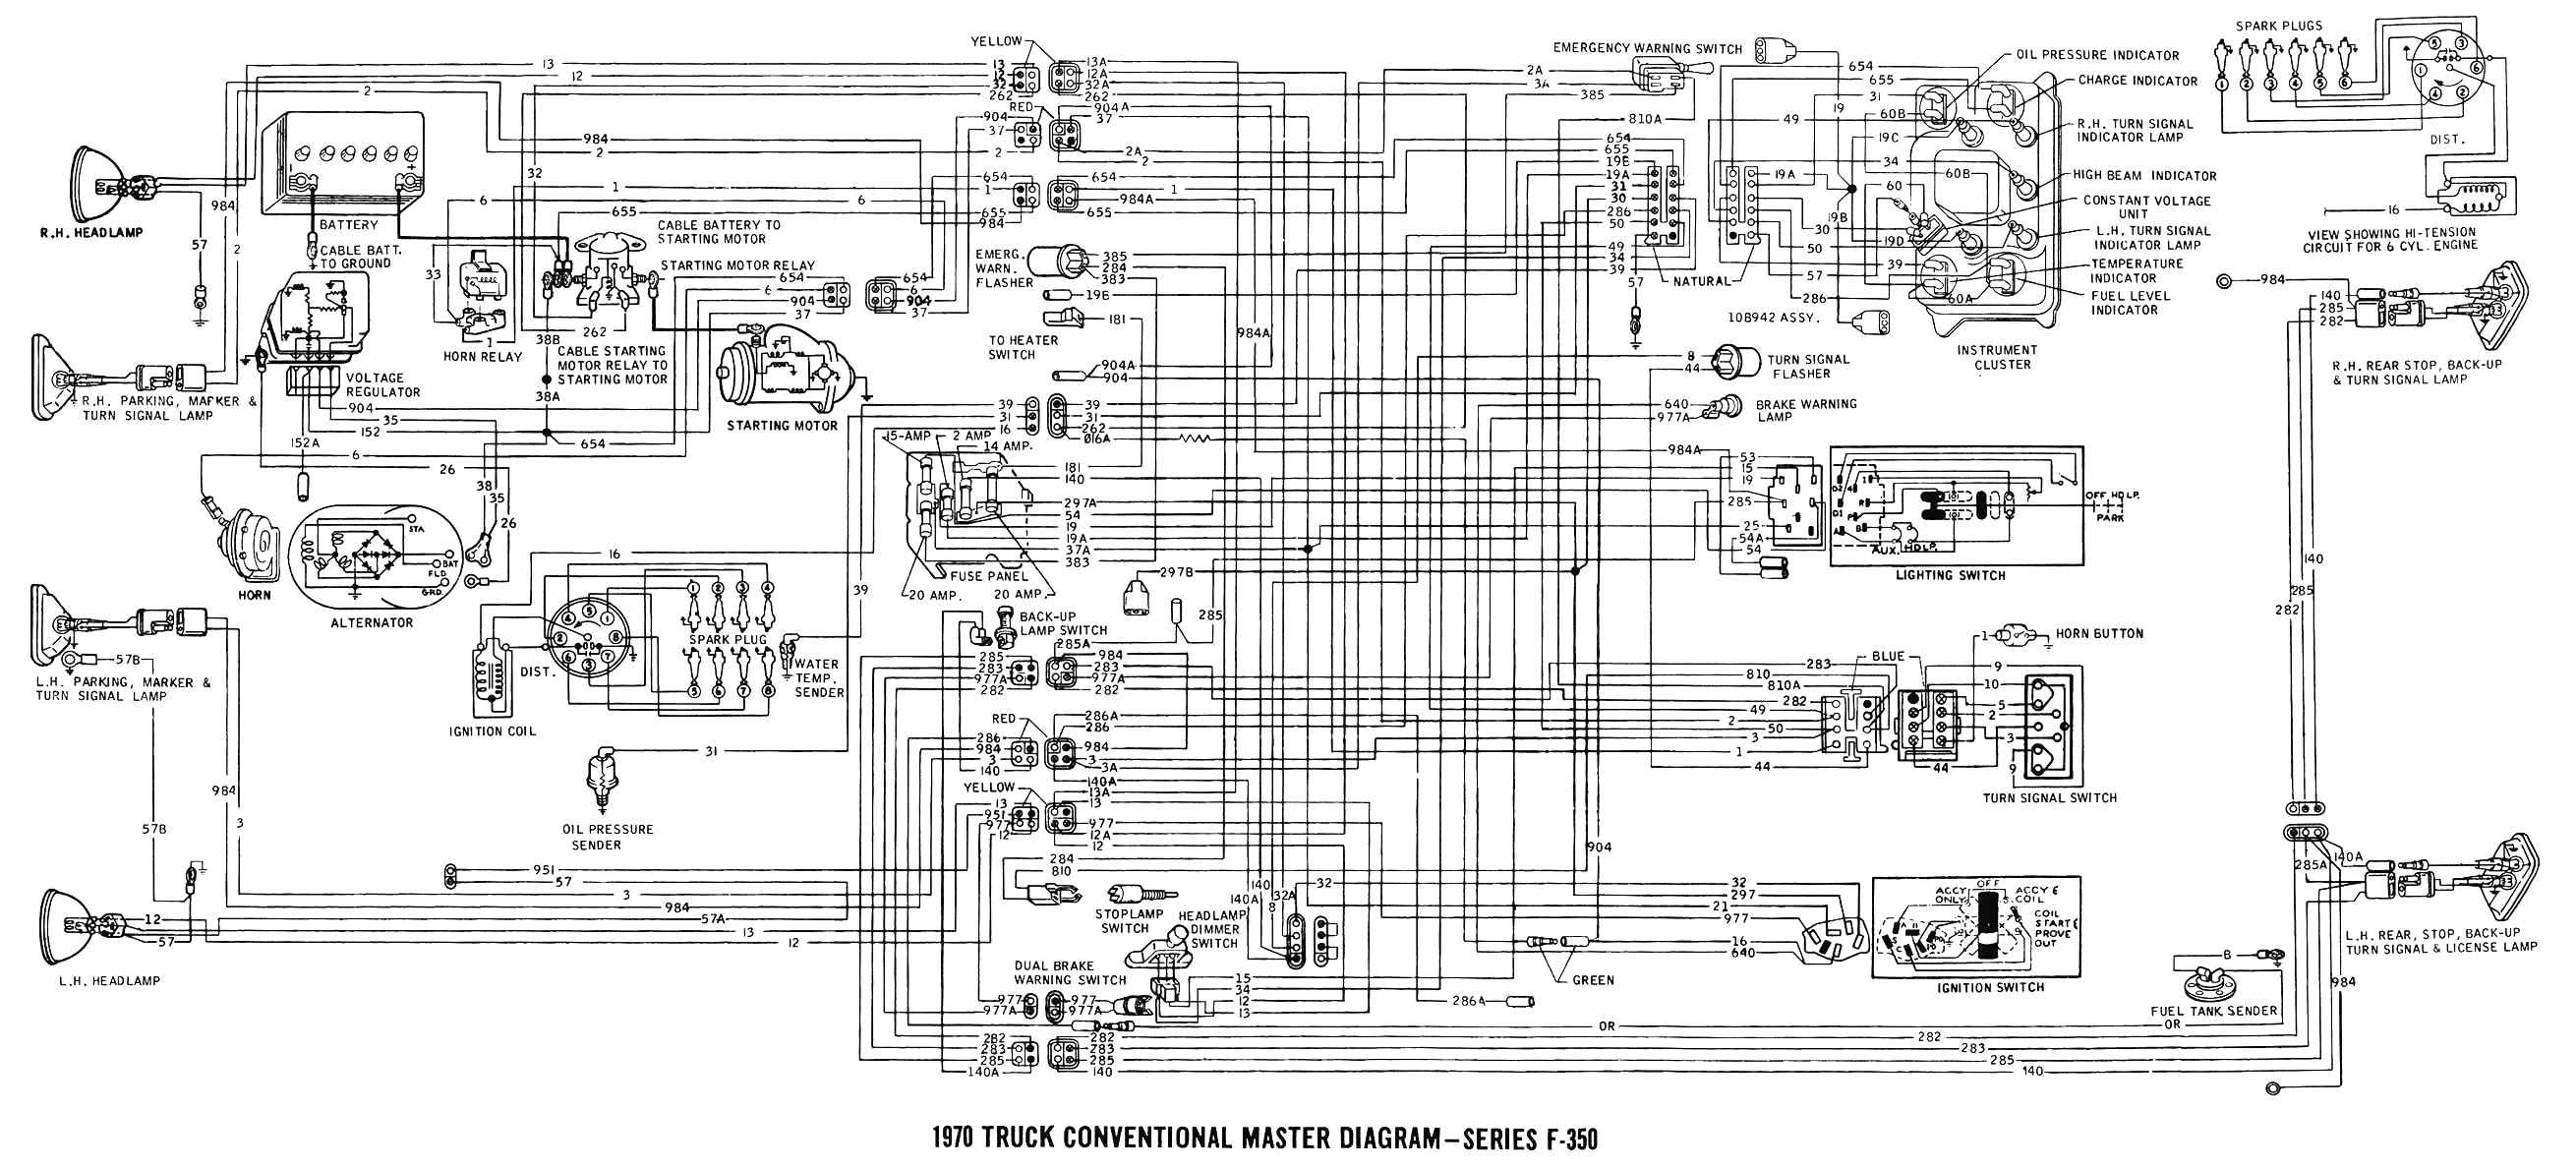 Ford E350 Wiring Diagram 1990 ford E350 Wiring Diagram Wiring Diagrams Ments